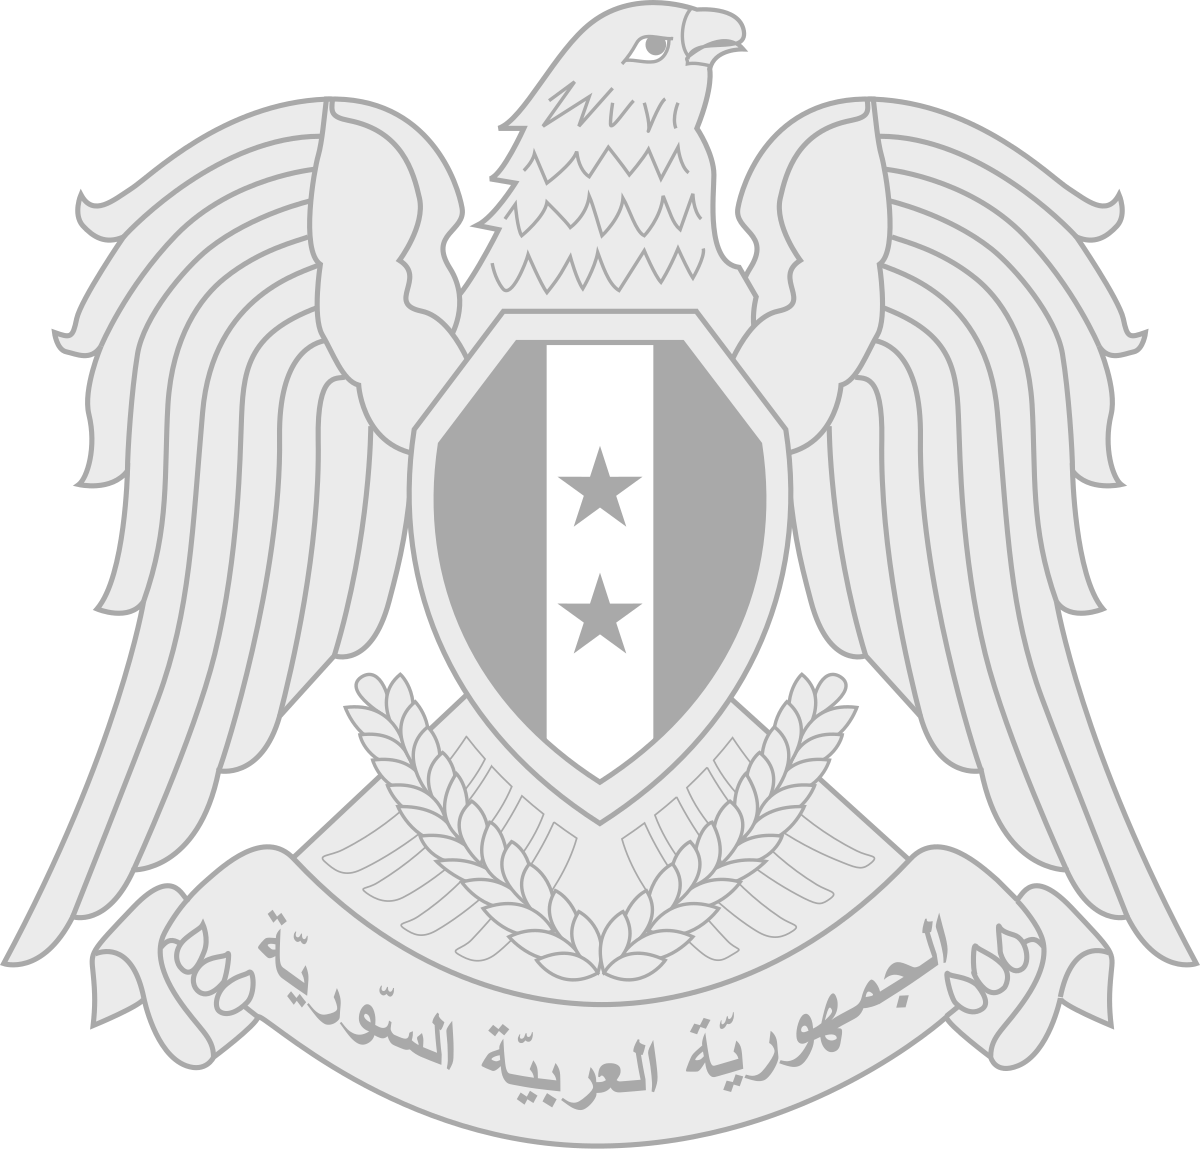 President of Syria - Wikipedia